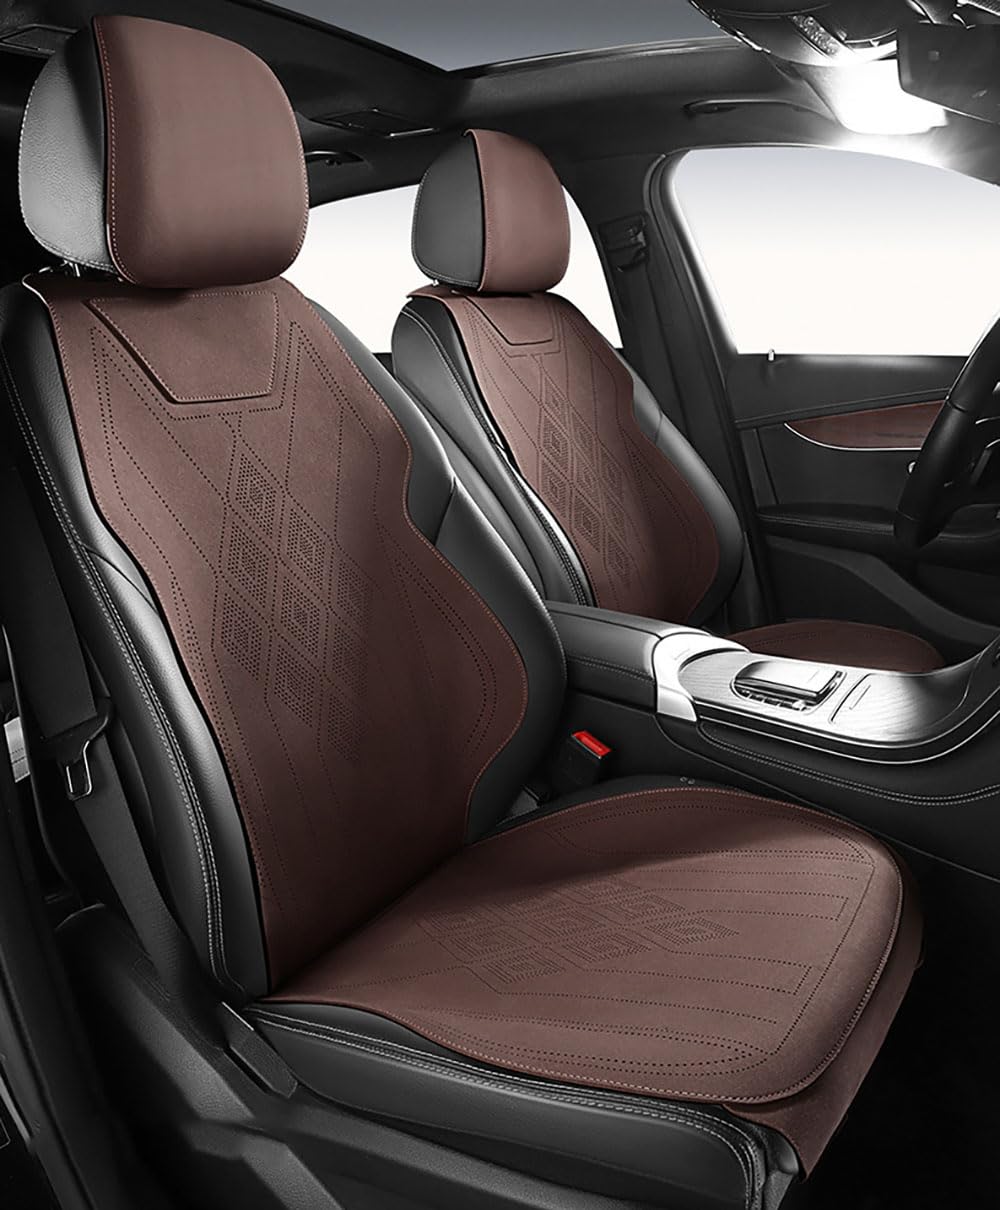 TQWUY Auto Sitzbezüge Sets für Hyundai Sonata LF 2015-2020 5-Sitze vorne und hinten Wasserdicht Verschleißfest Innenraum Accessories, C-brown-Split type von TQWUY